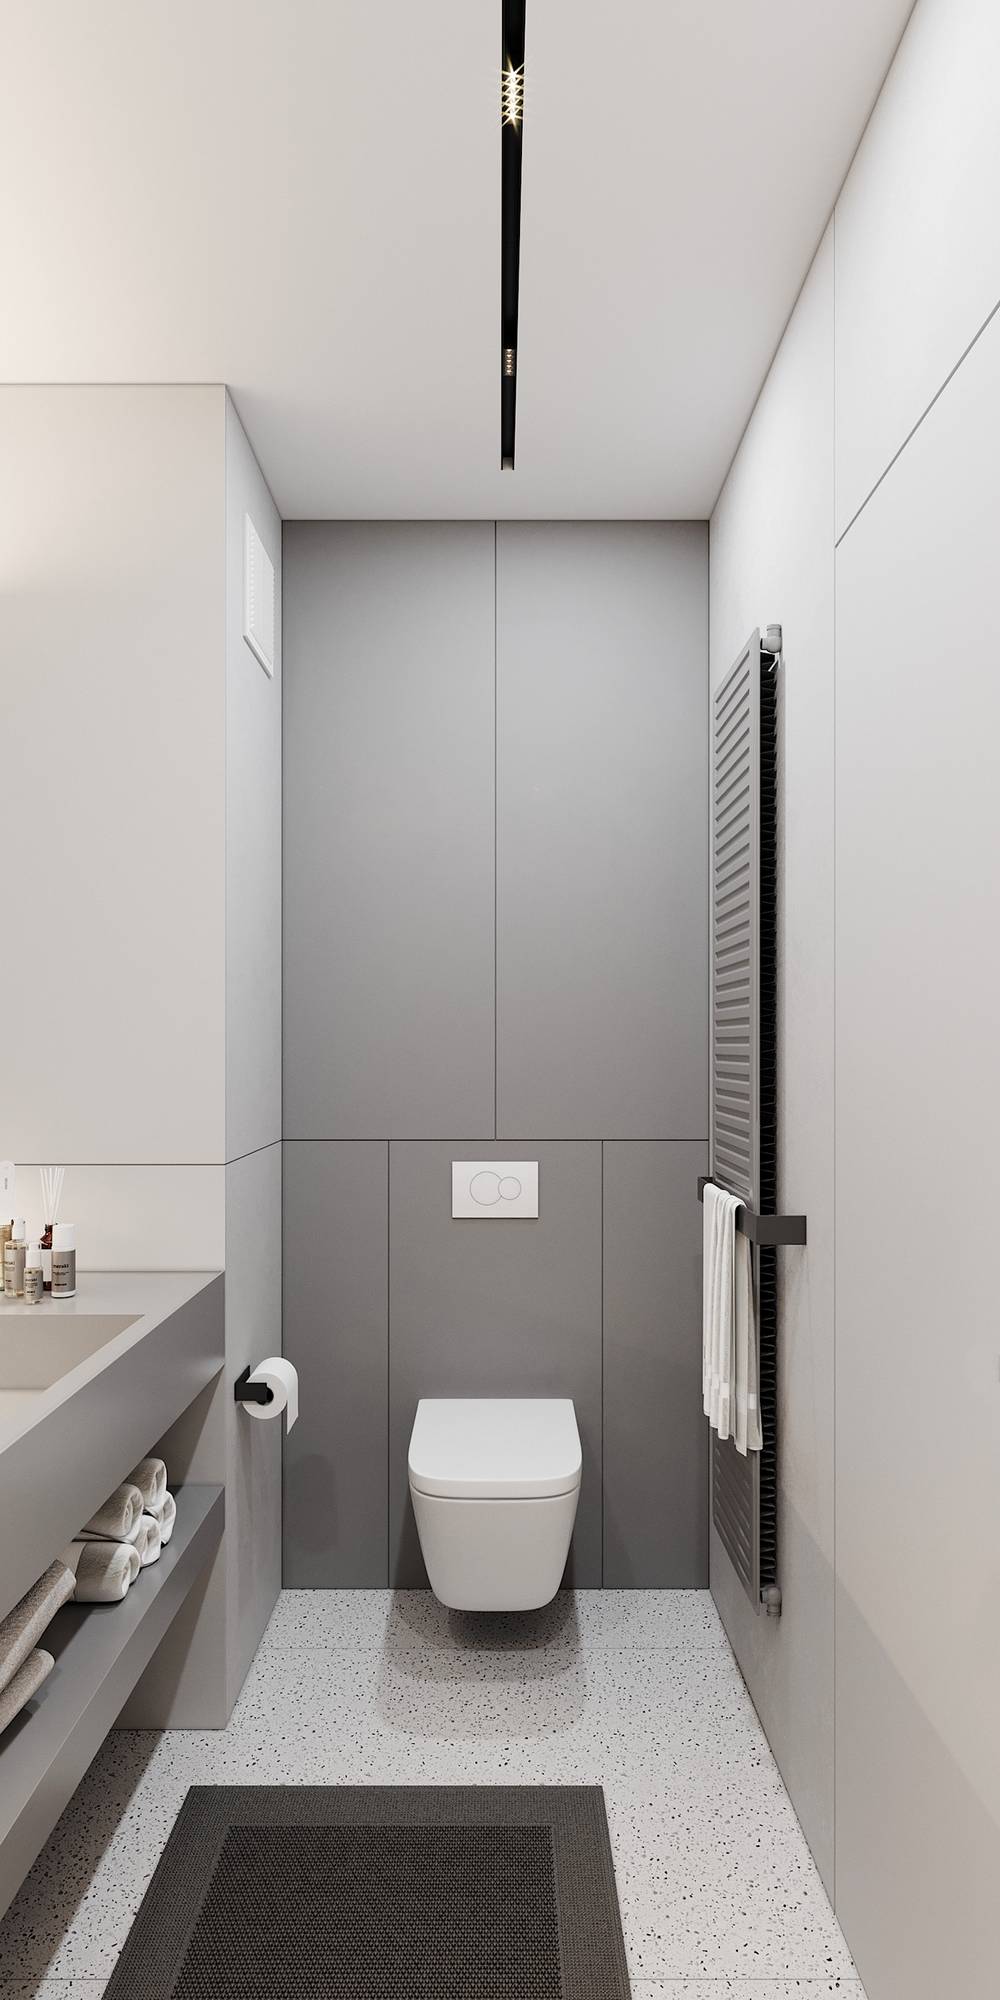 Sàn phòng tắm lát gạch với họa tiết đơn giản, kết hợp thảm chống trượt an toàn. Toilet gắn tường và giá treo khăn tắm giúp giải phóng diện tích sàn hiệu quả.